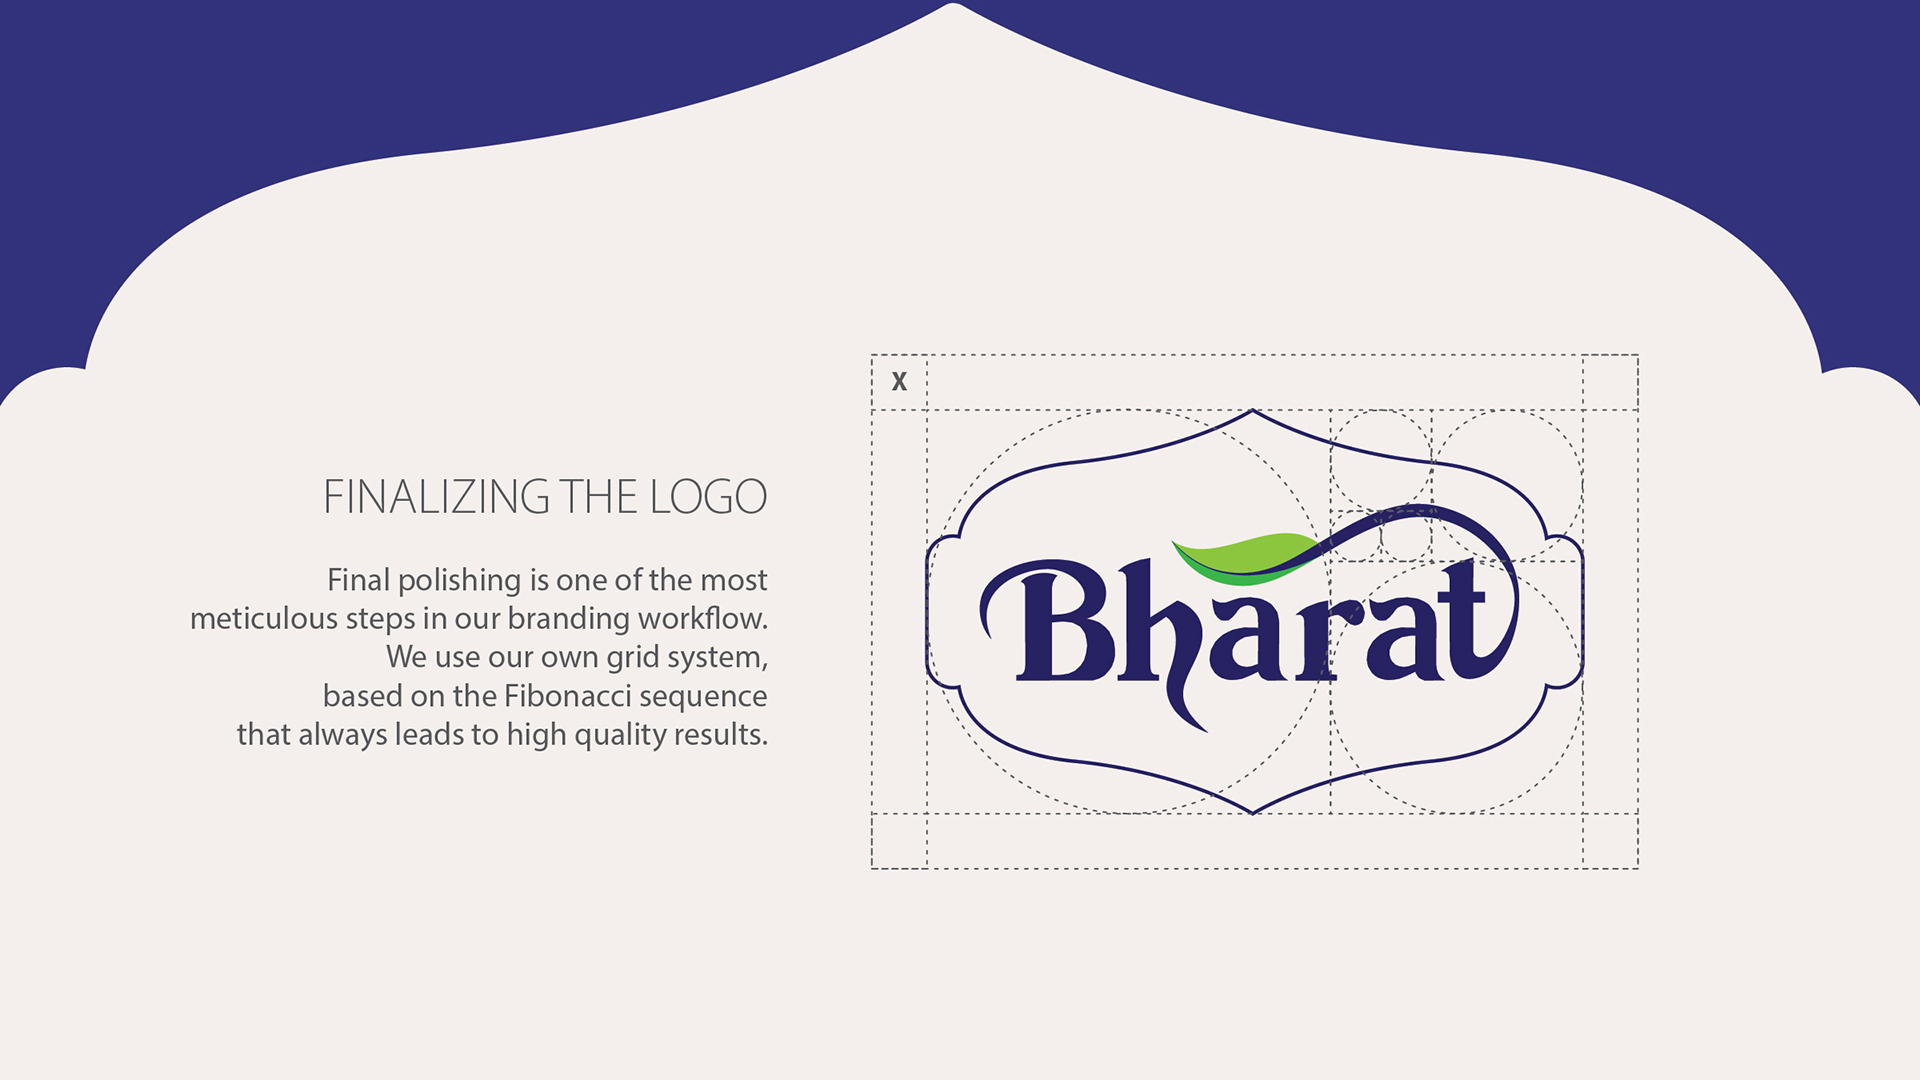 Bharath name Branding logo design || #shorts #viral #Trending #branding # bharath #status - YouTube